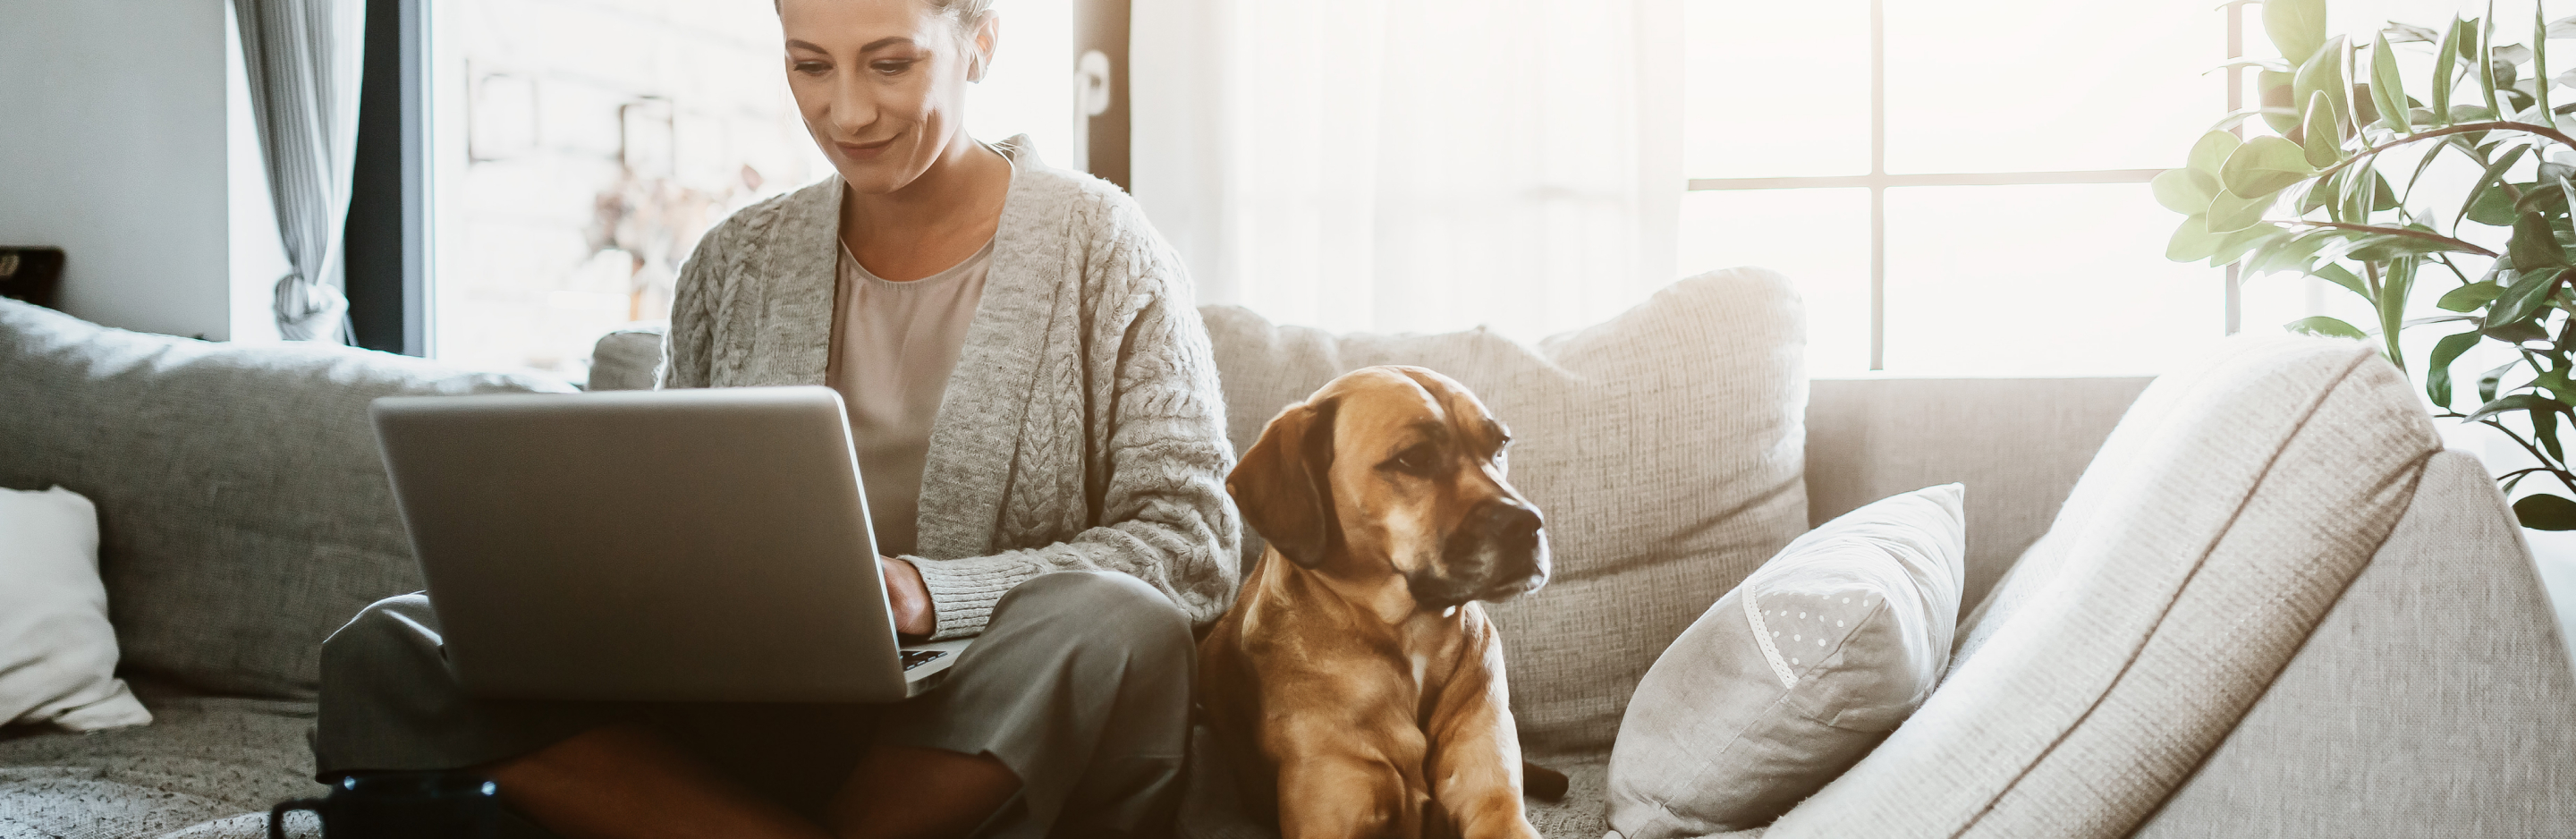 Frau sitzt auf mit Laptop und Hund